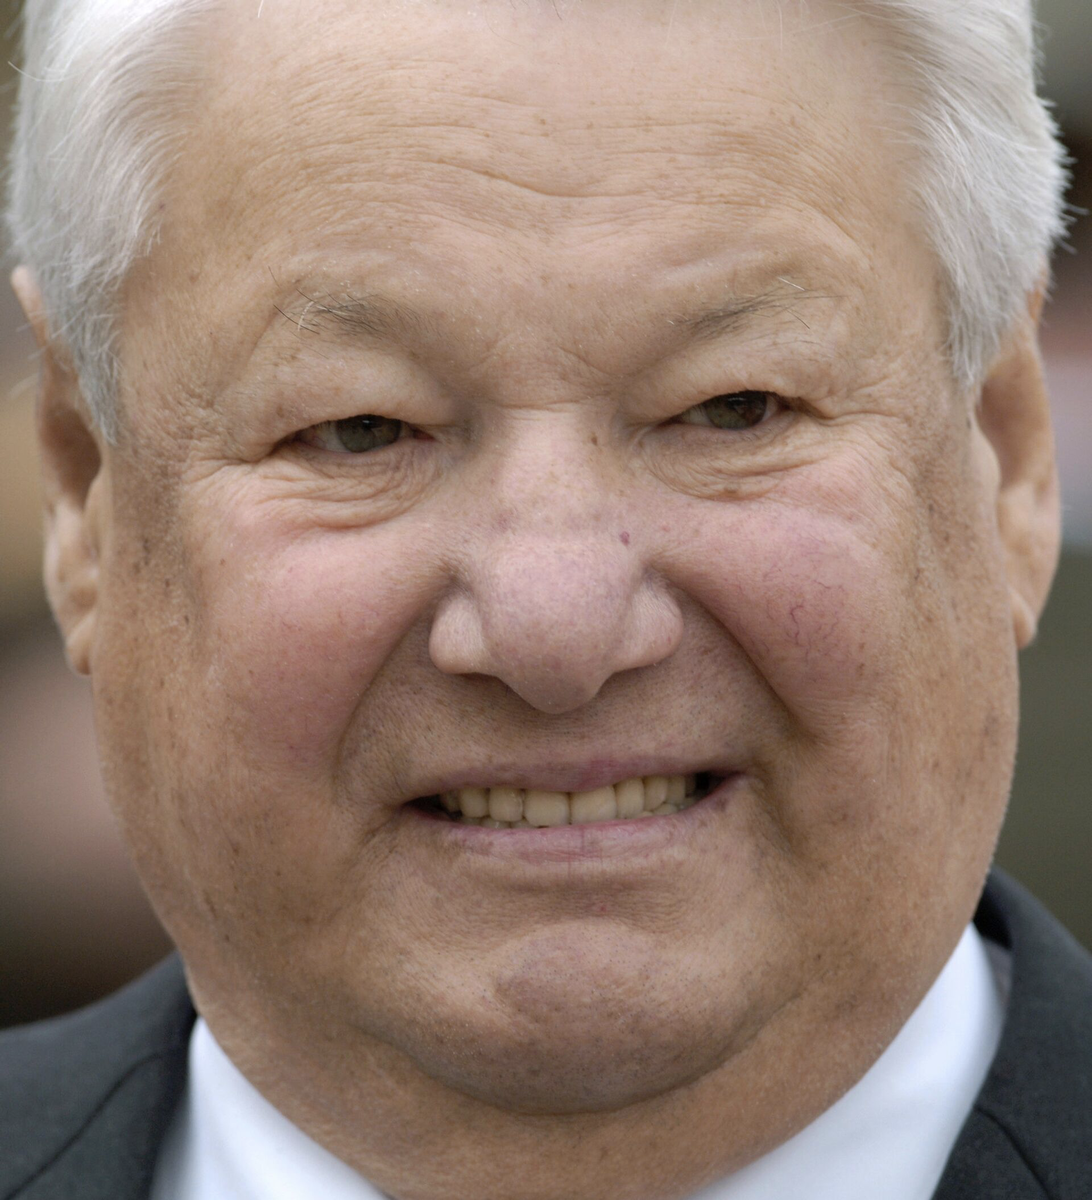 Борис Ельцин – первый президент Российской Федерации, получивший за свою деятельность неоднозначные оценки.